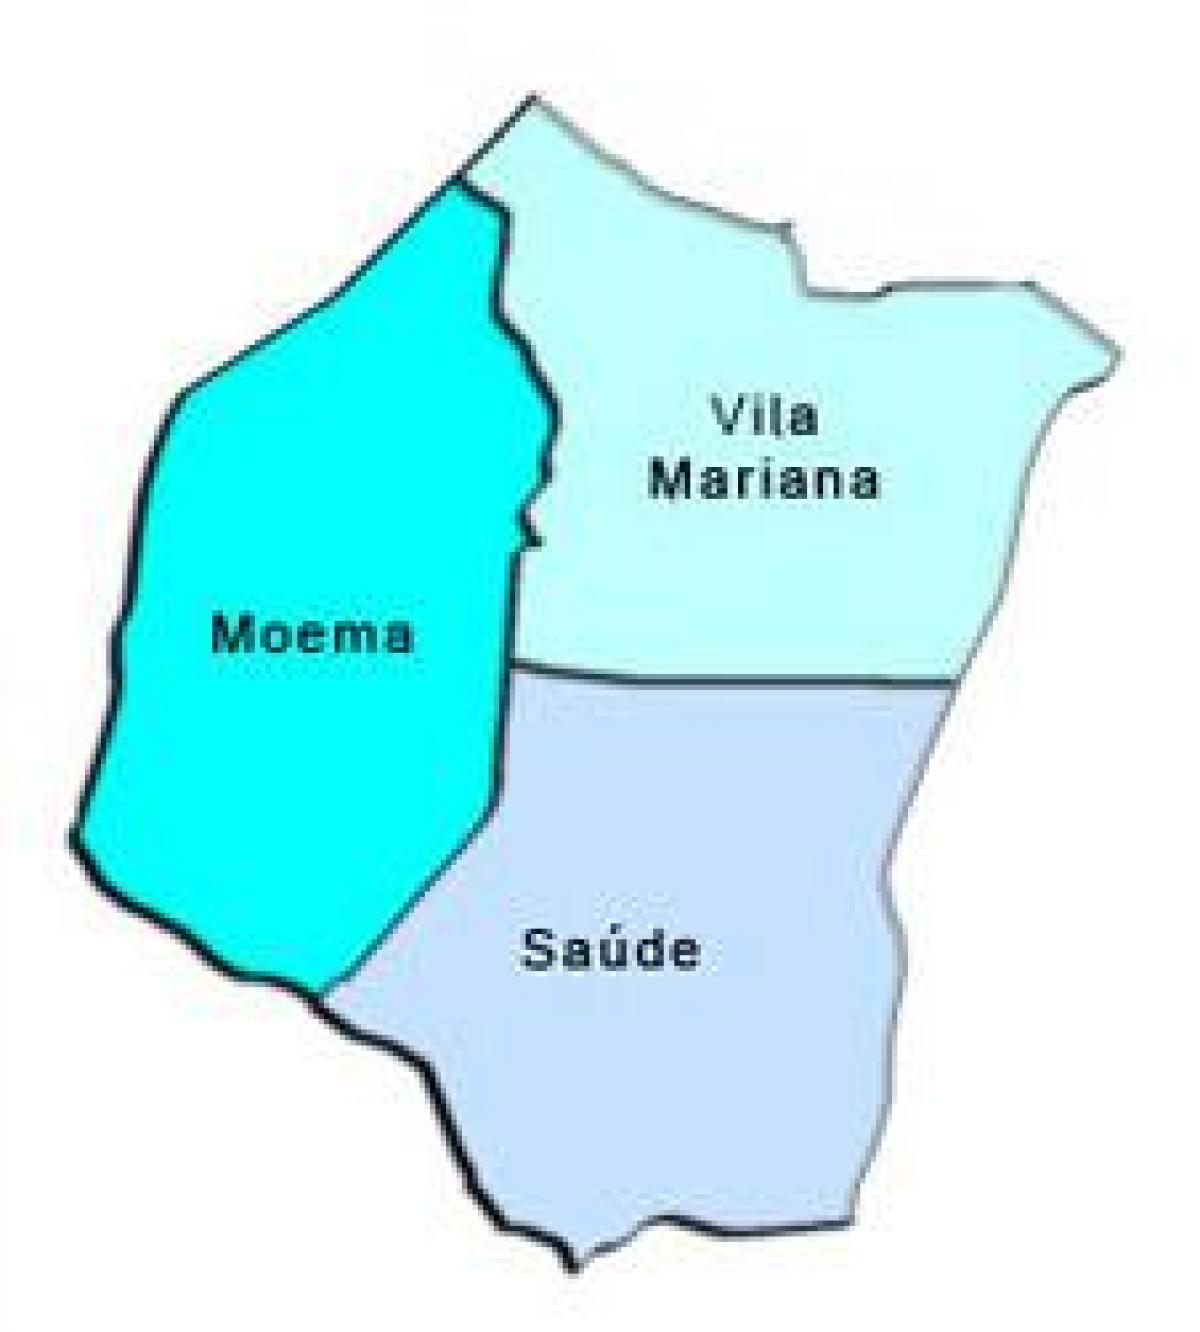 Мапа на Вила Мариана под-префектурата